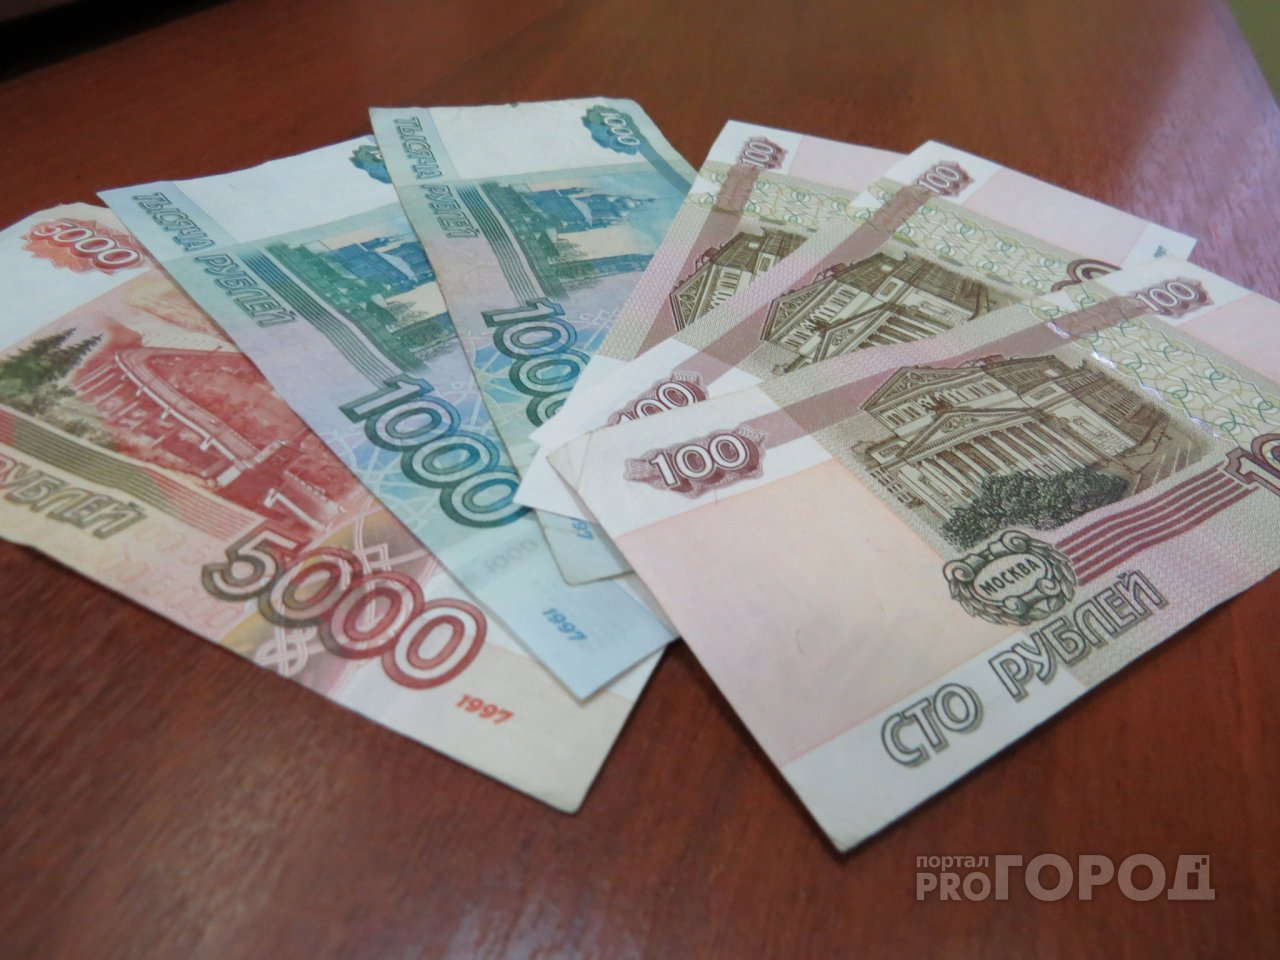 В Марий Эл на уход за ребенком до трех лет начнут платить тысячи рублей